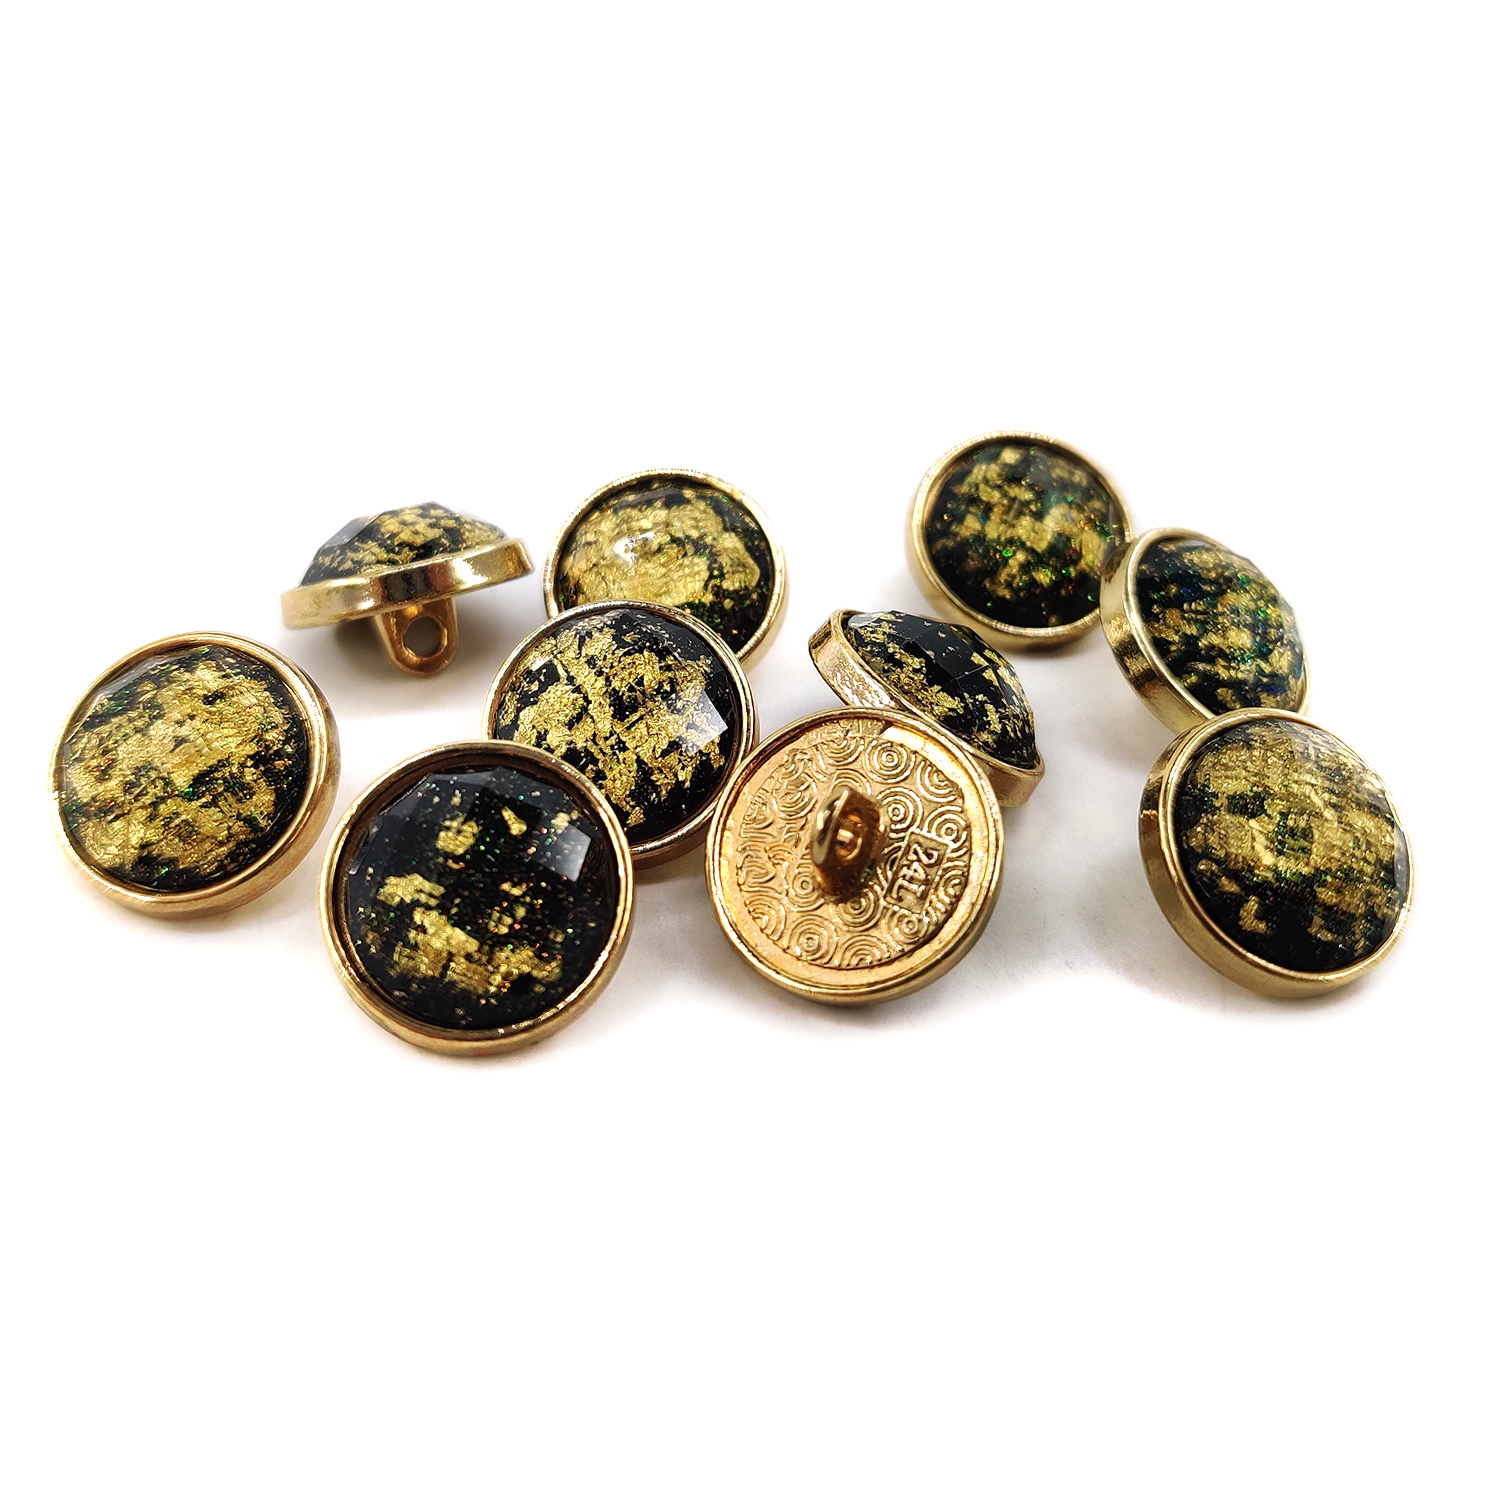 Craftisum Beveled Cut Glass Black Golden Foil Layer Golden Metal Base Sewing Buttons 10 Pcs - 15mm, 5/8"